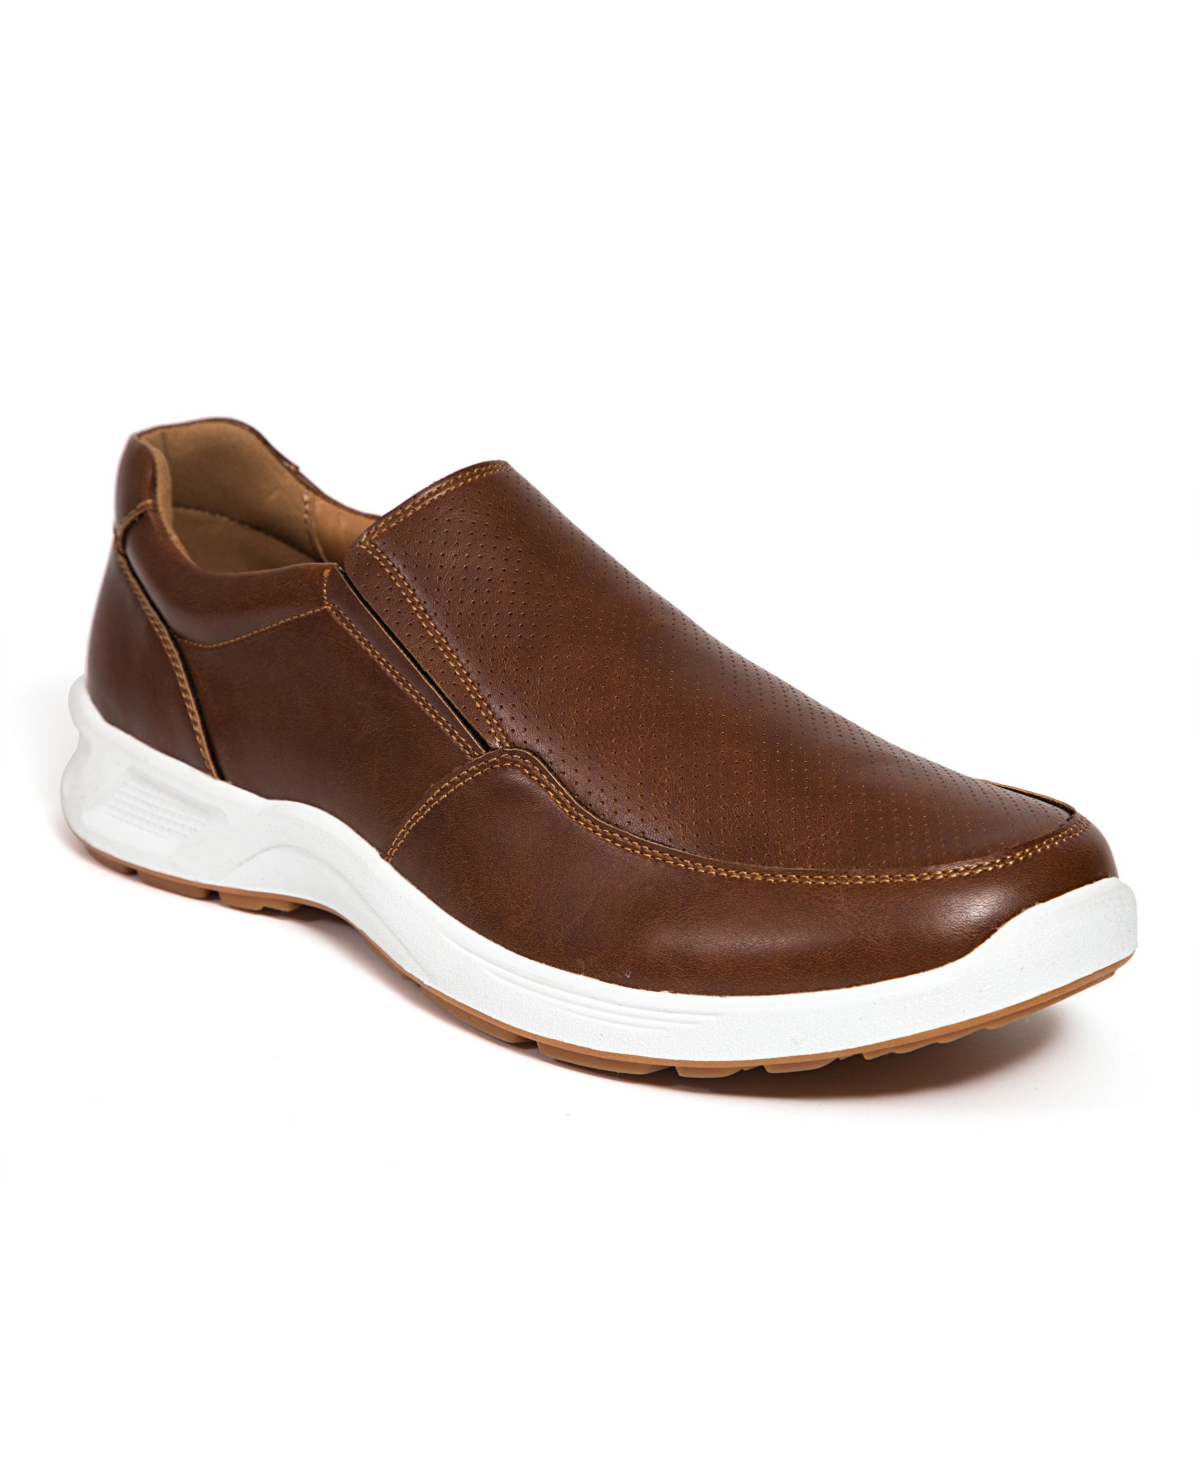 Men's Bentley Dress Comfort Loafers - Brown